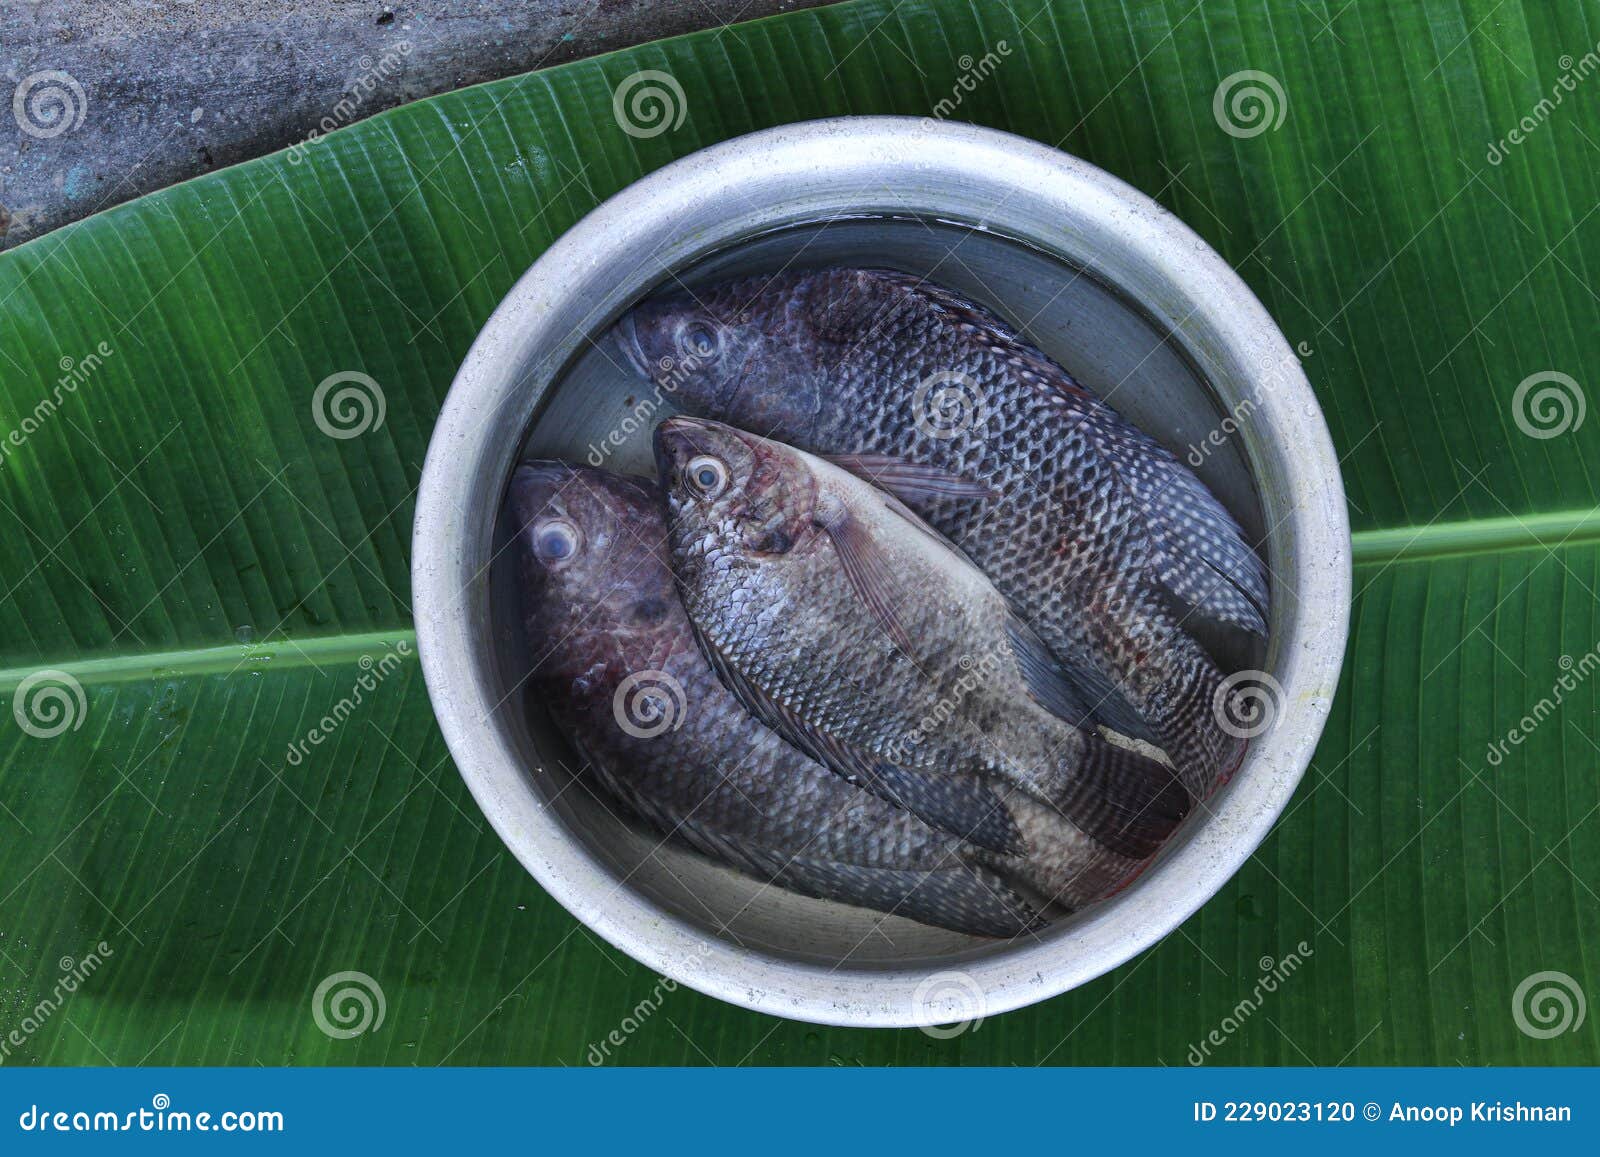 fresh tilapia fish